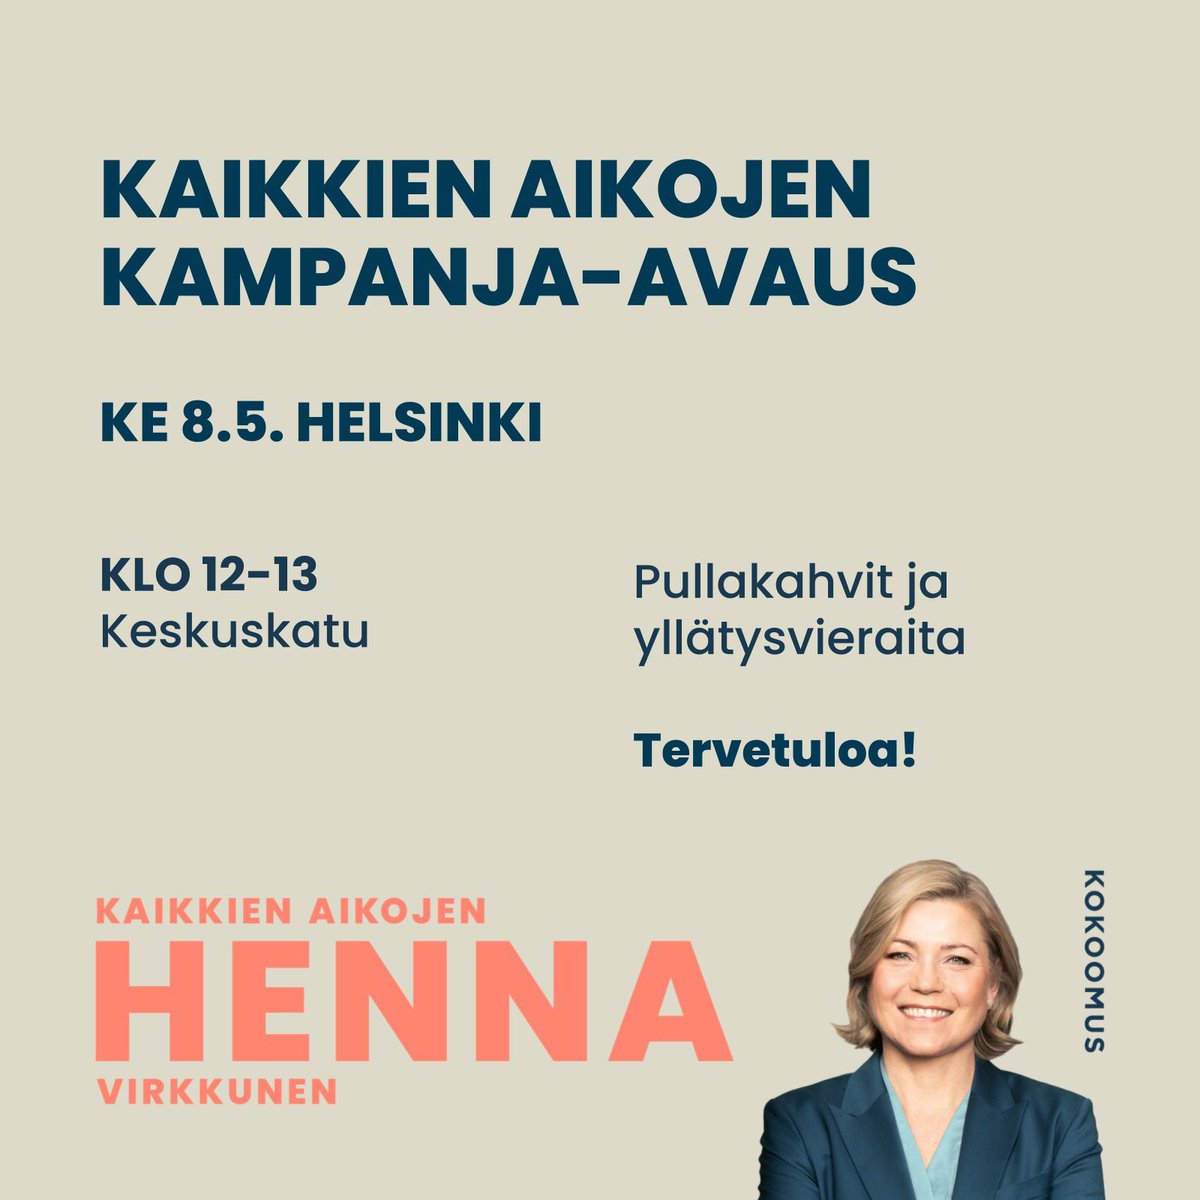 Tänään keskiviikkona #Kaikkienaikojen -kampanjanavaus Helsingissä klo 12. Mukana @paularisikko @elinavaltonen @sannigrahn @SariMultala. Tervetuloa mukaan! #KaikkienaikojenHenna #eurovaalit24